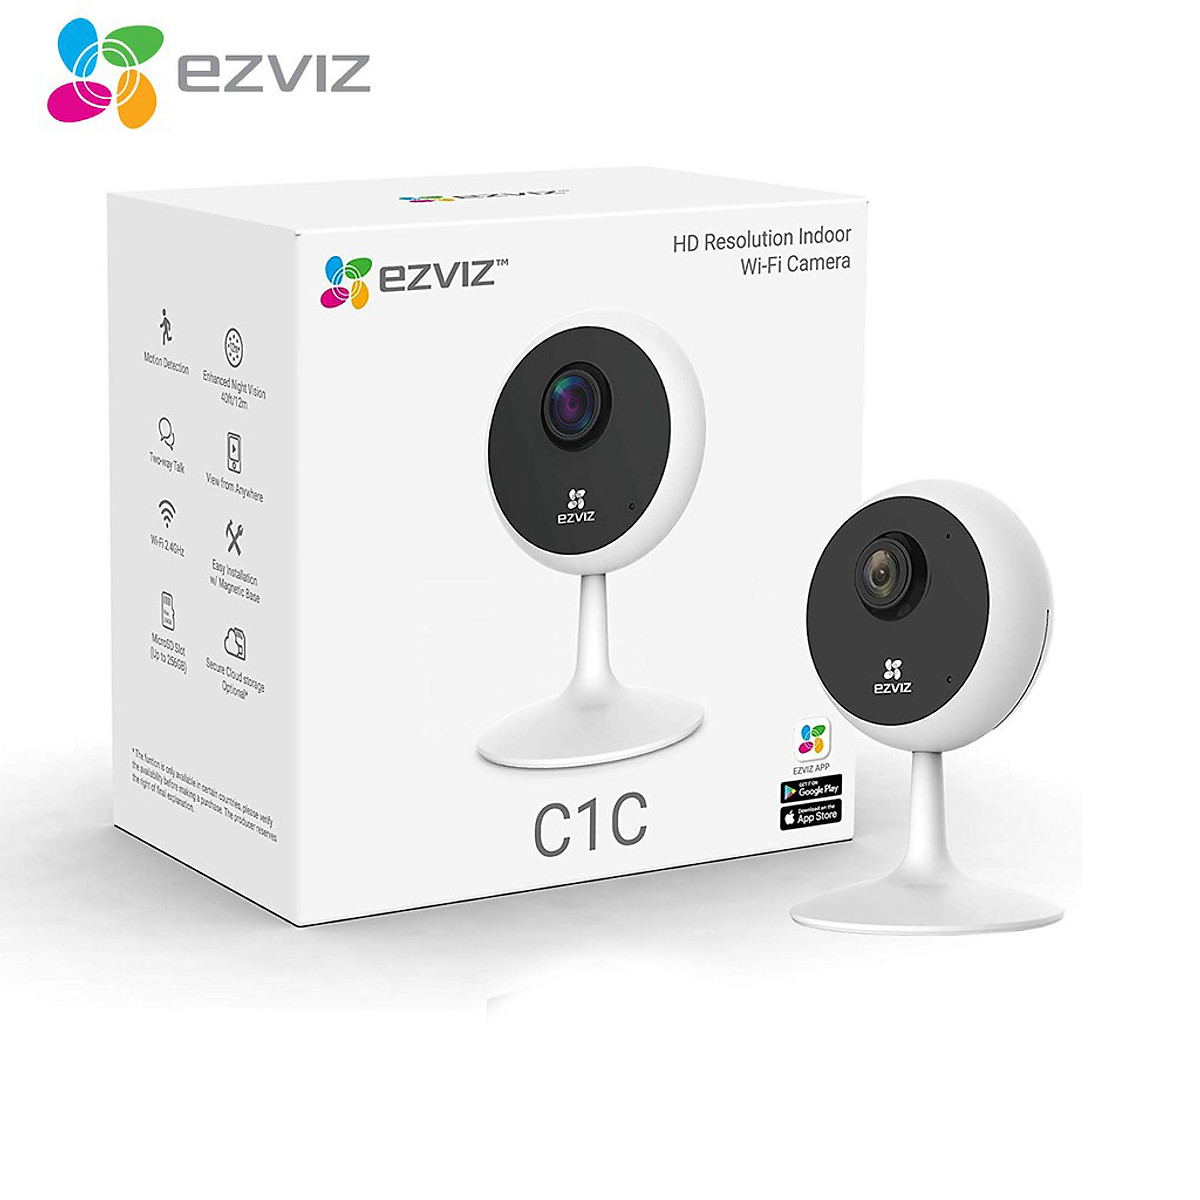 Trọn bộ Camera Ip Wifi Ezviz Cube C1C Full HD 1080P Và Thẻ Nhớ HIKVISION 64GB - Hàng Chính Hãng